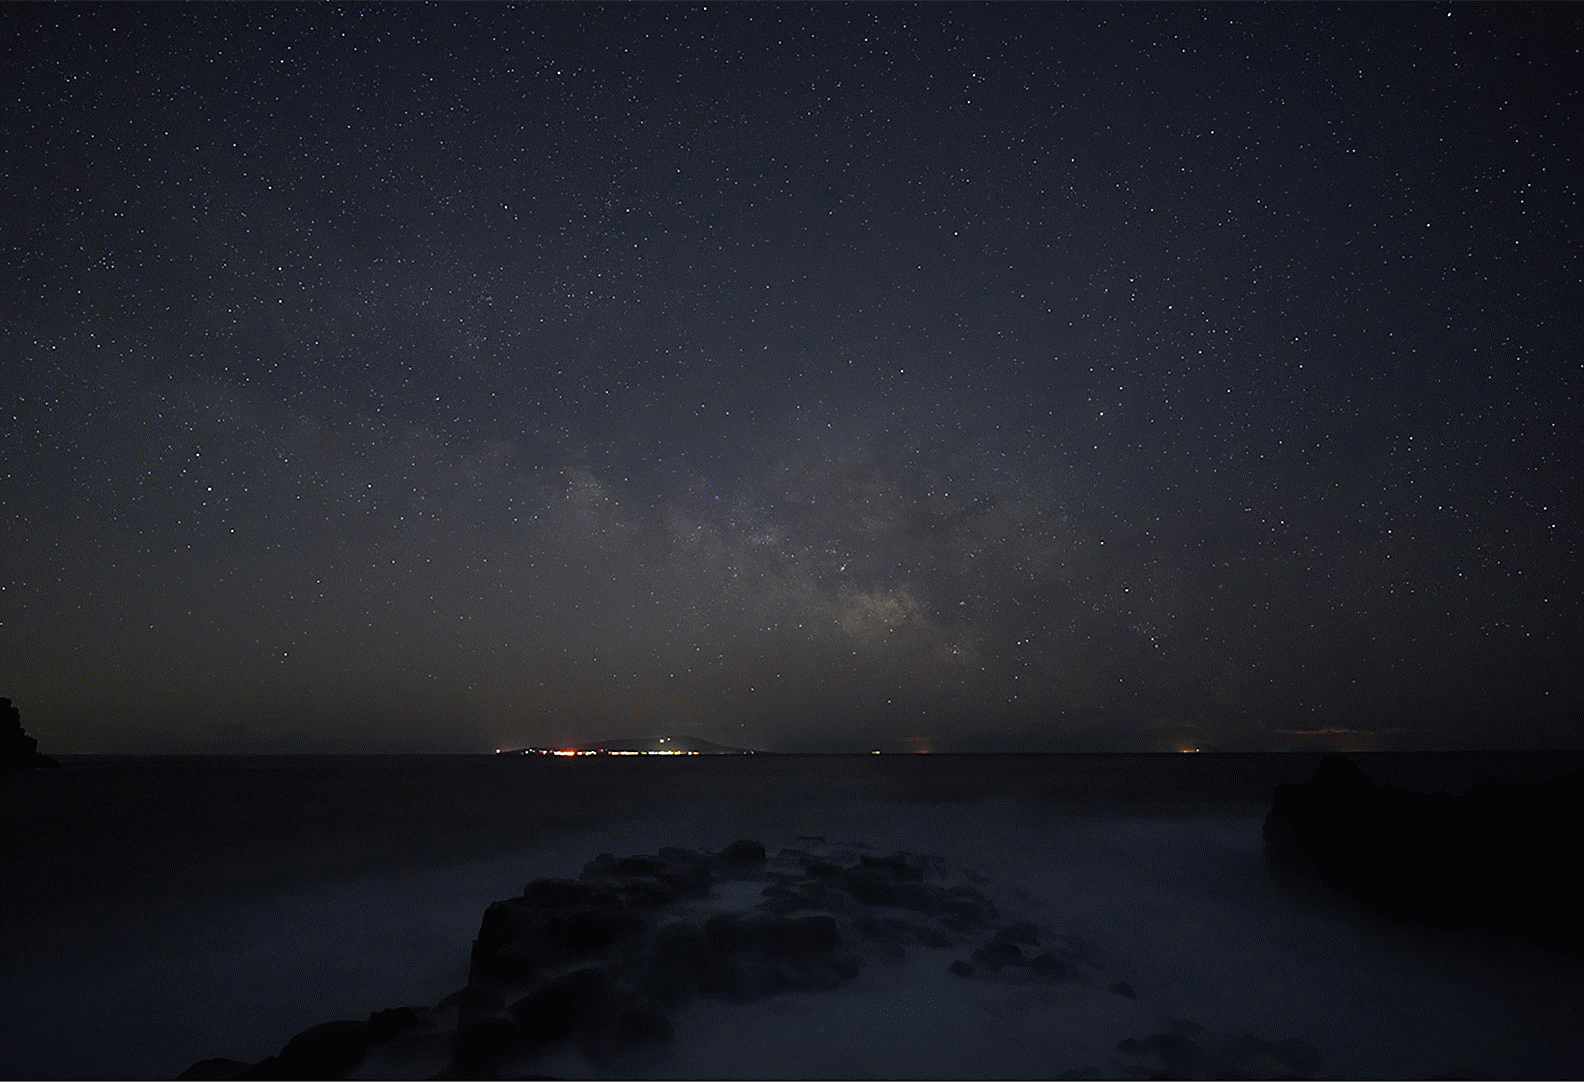 Снимок звездного неба, показывающий Млечный Путь над морем